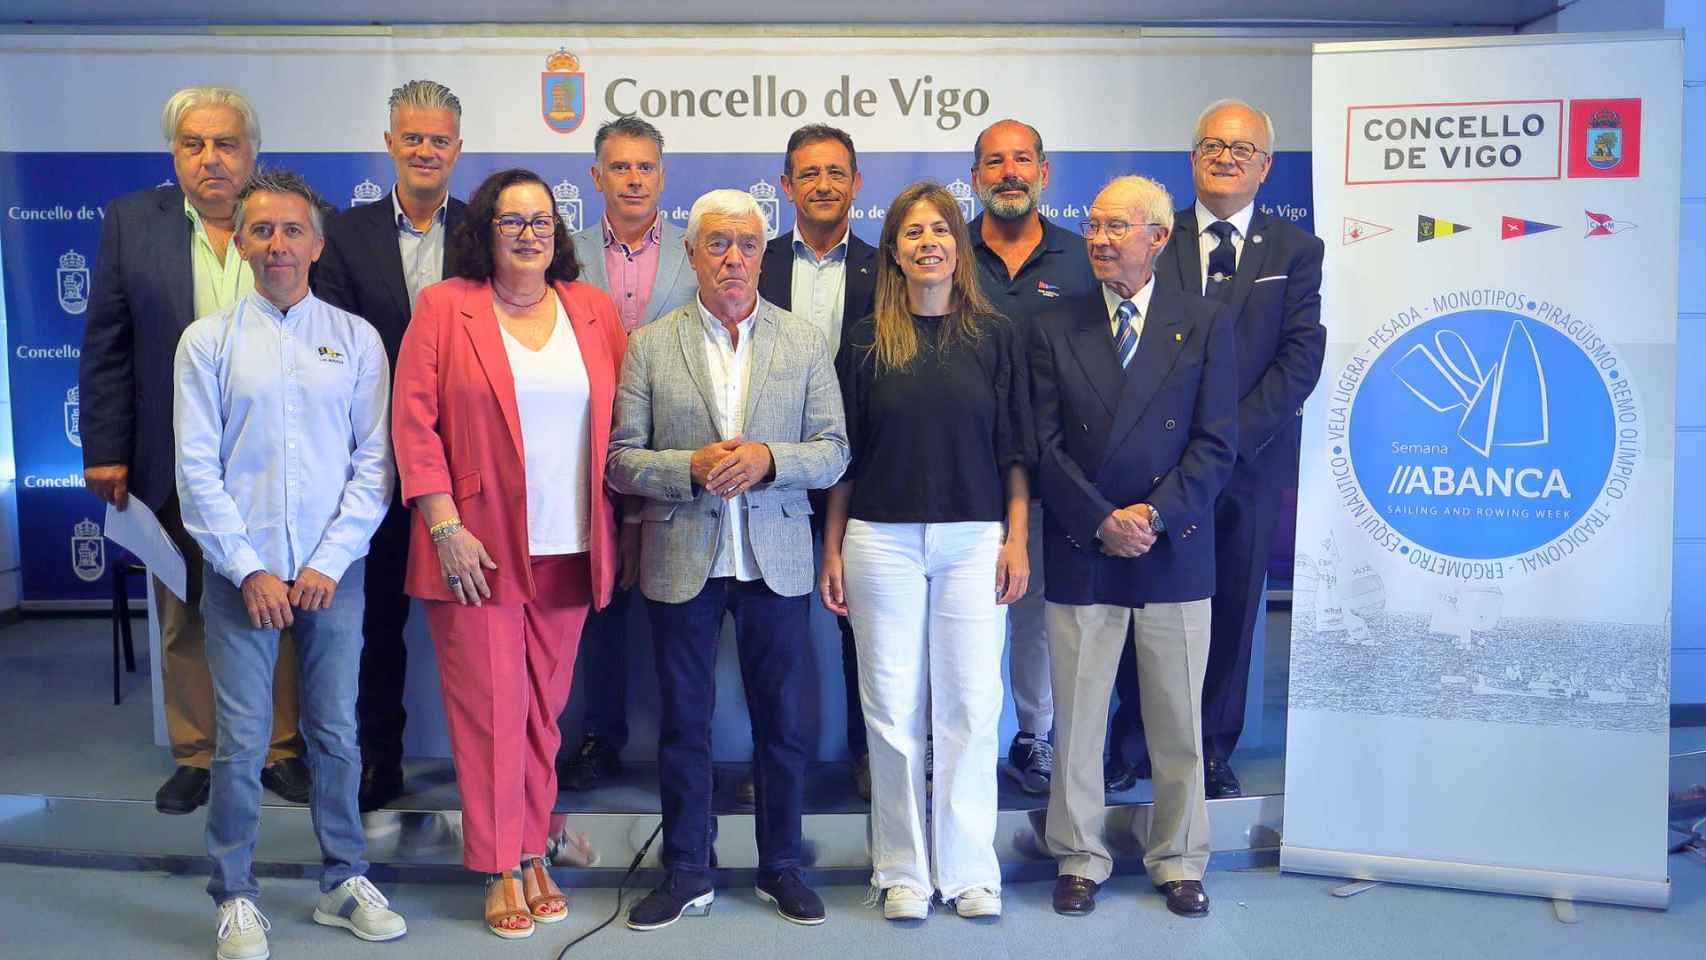 Presentación del evento en el Concello de Vigo.